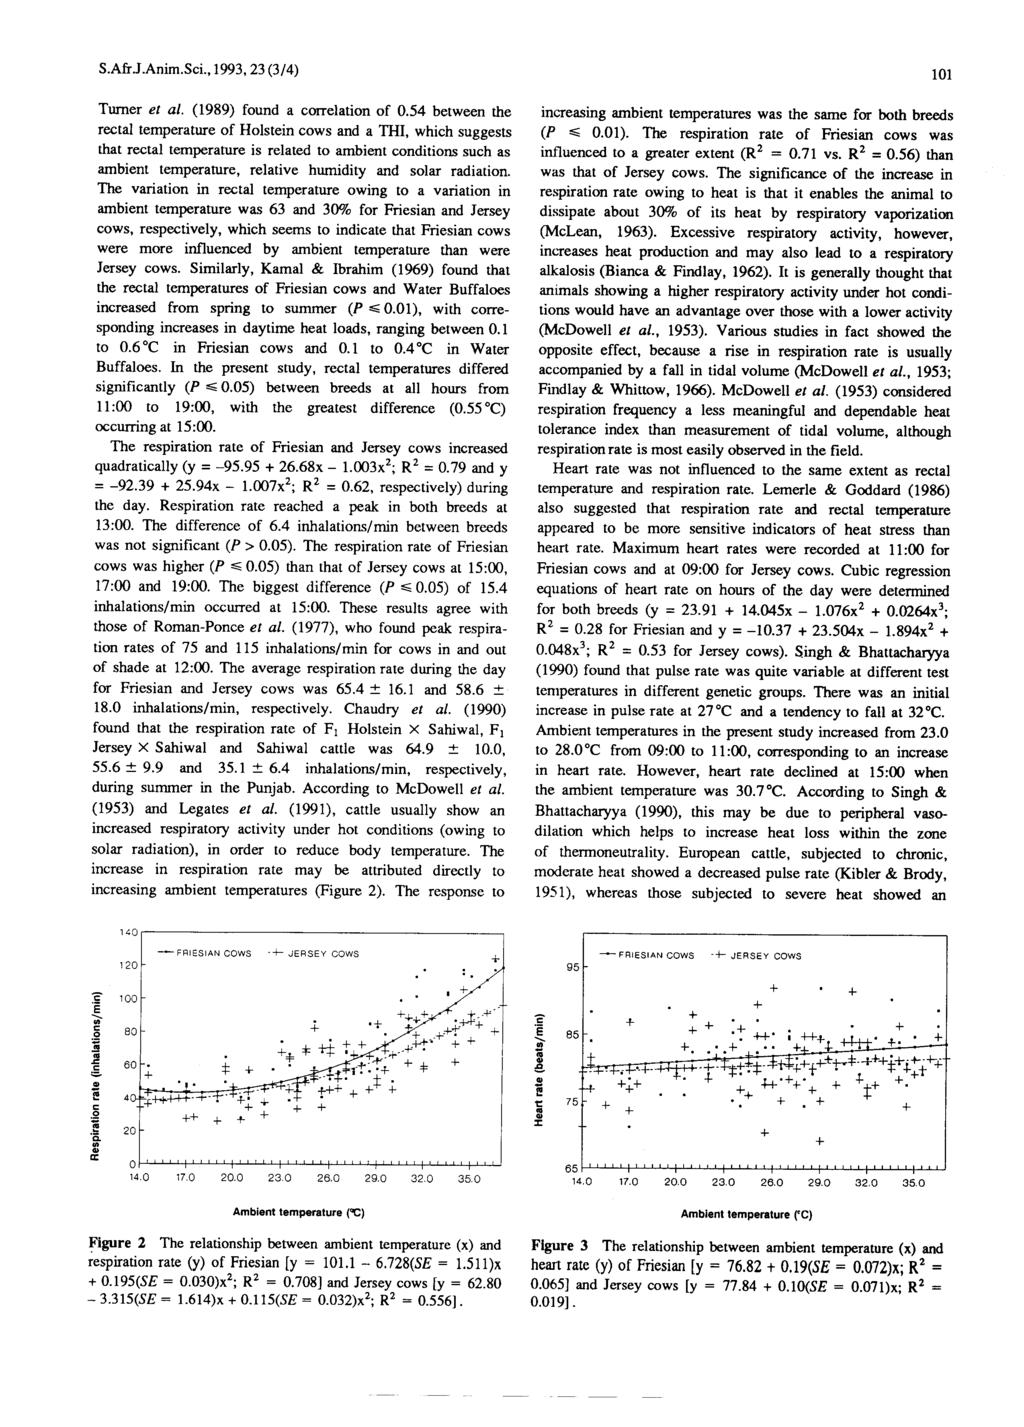 Tumer et al. (1989) found a correlation of 0.